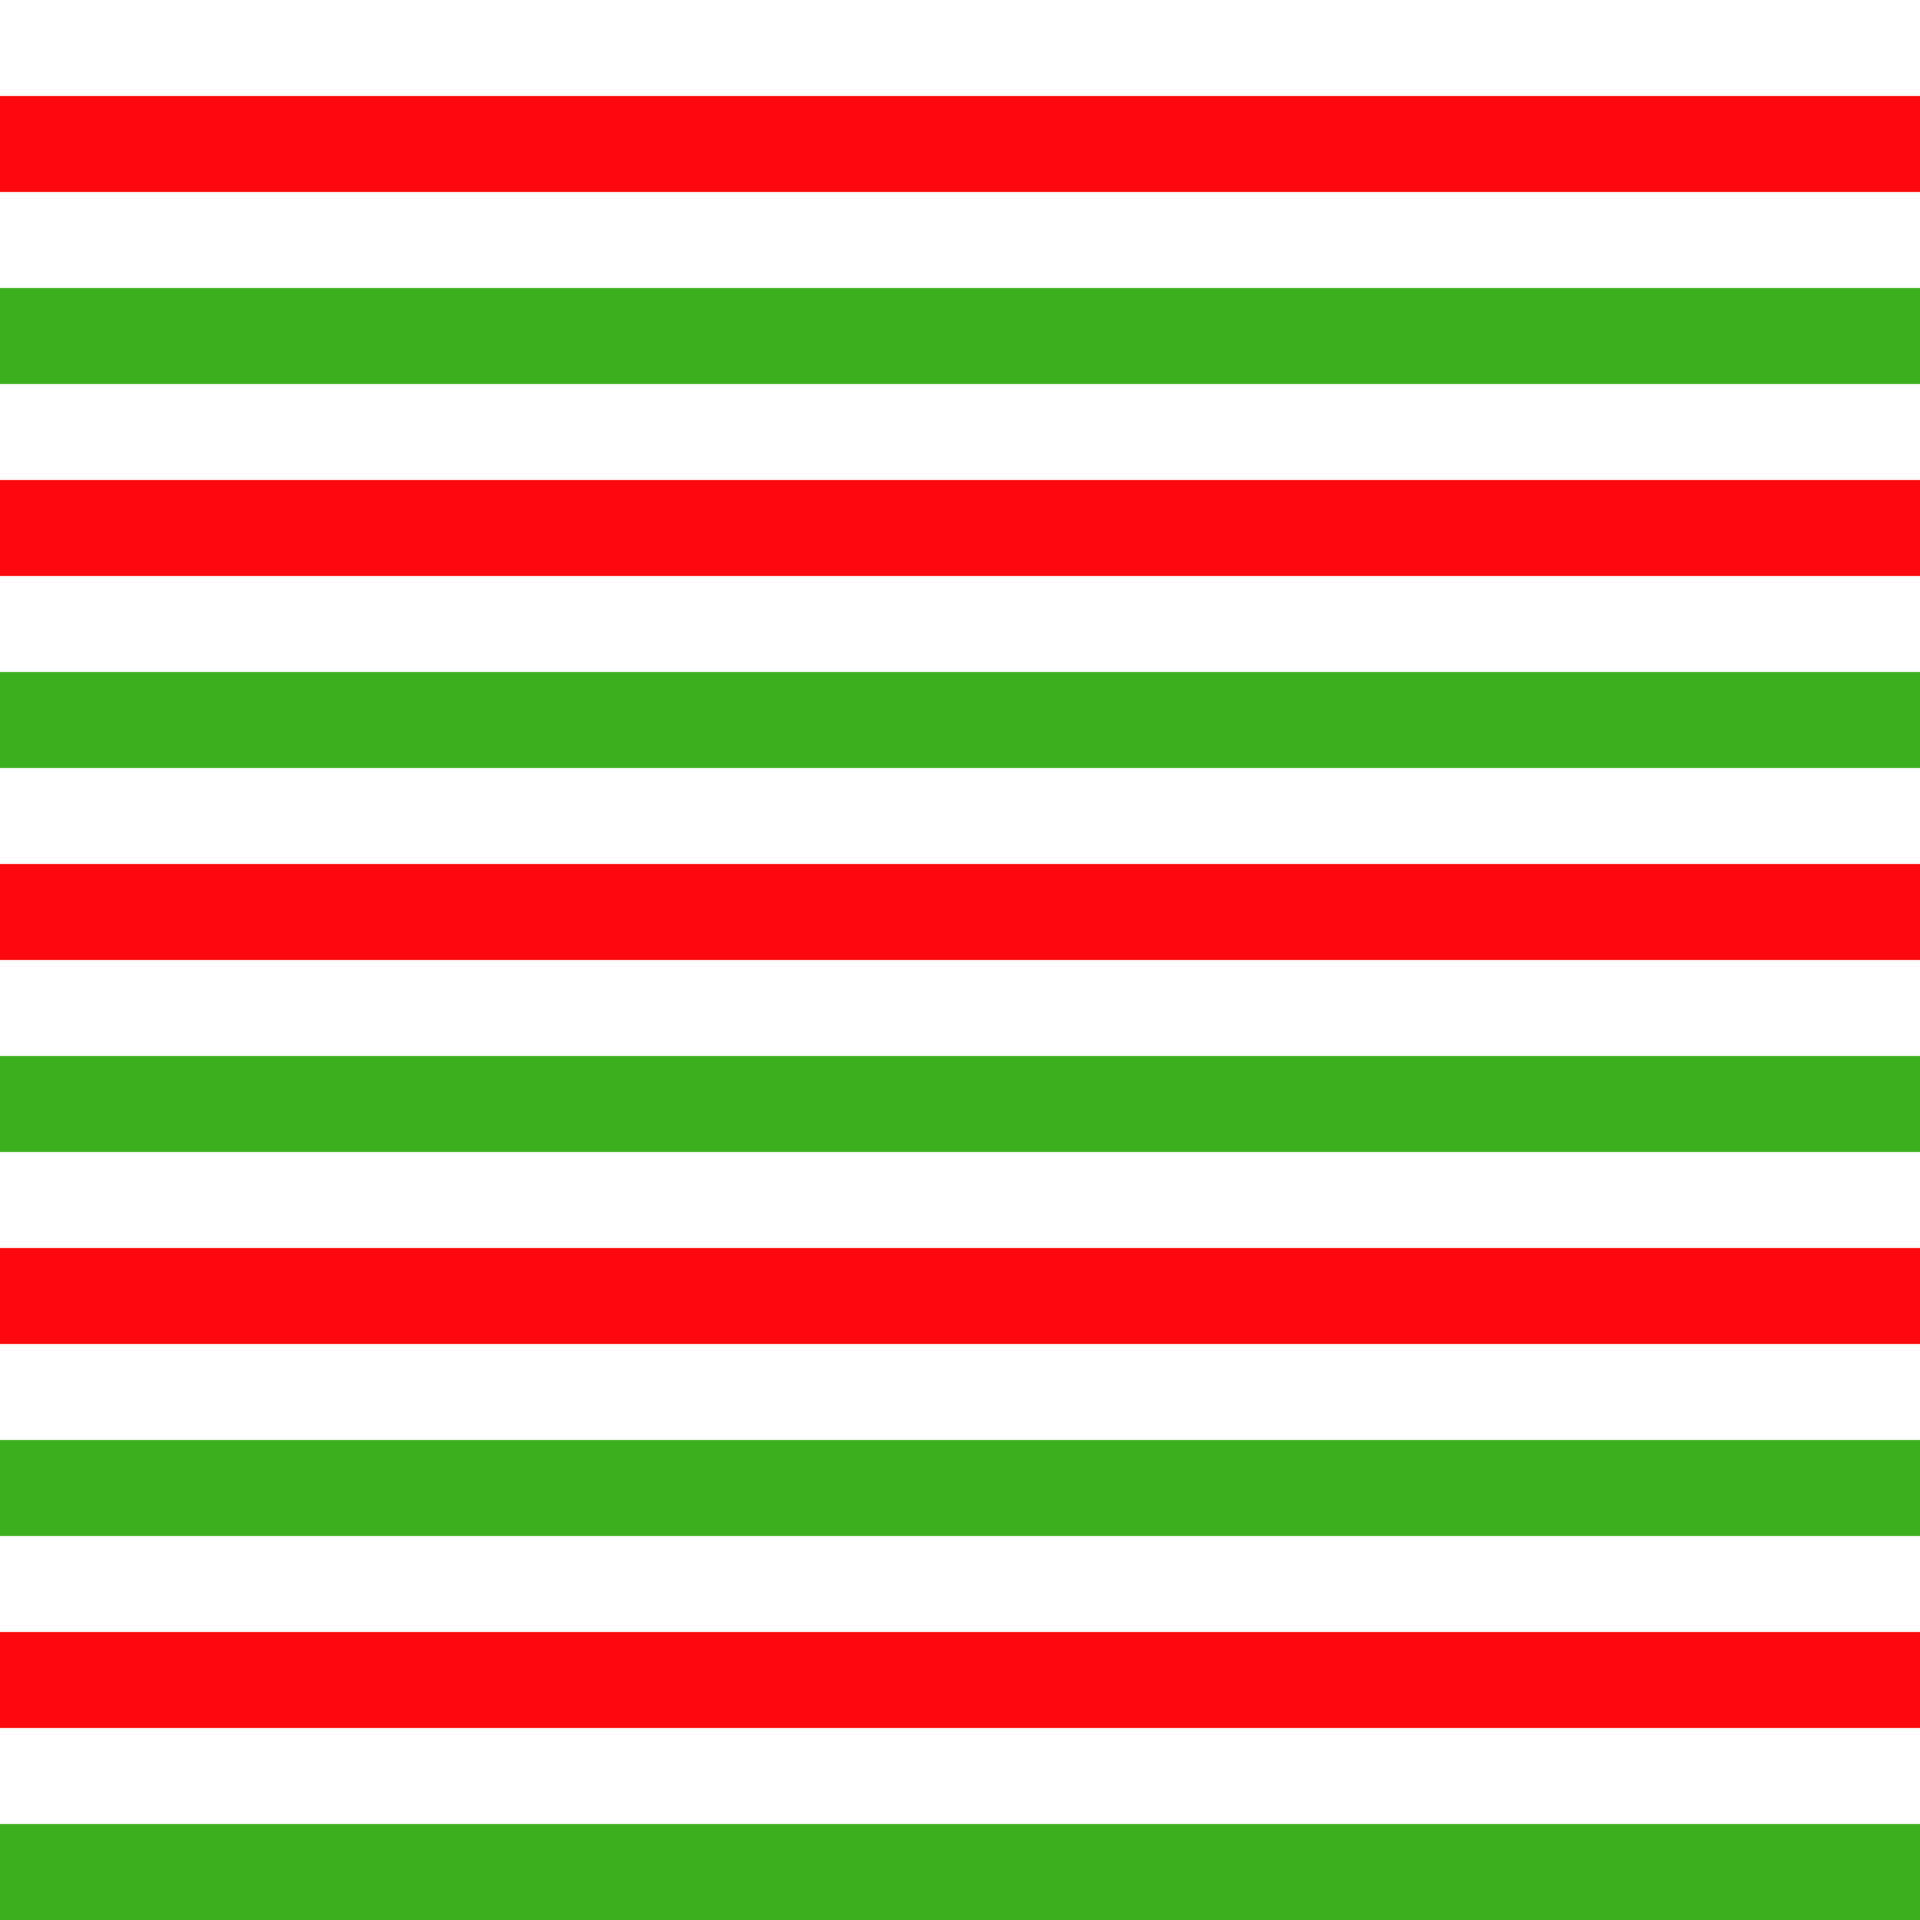 Với mẫu vẽ sọc đỏ trắng xanh lá cây không góc nối, bạn sẽ thấy được một hình ảnh rực rỡ và sinh động, khiến cho người xem nghĩ ngay đến mùa Giáng sinh. Hãy xem hình ảnh liên quan để tận hưởng không khí của ngày lễ.